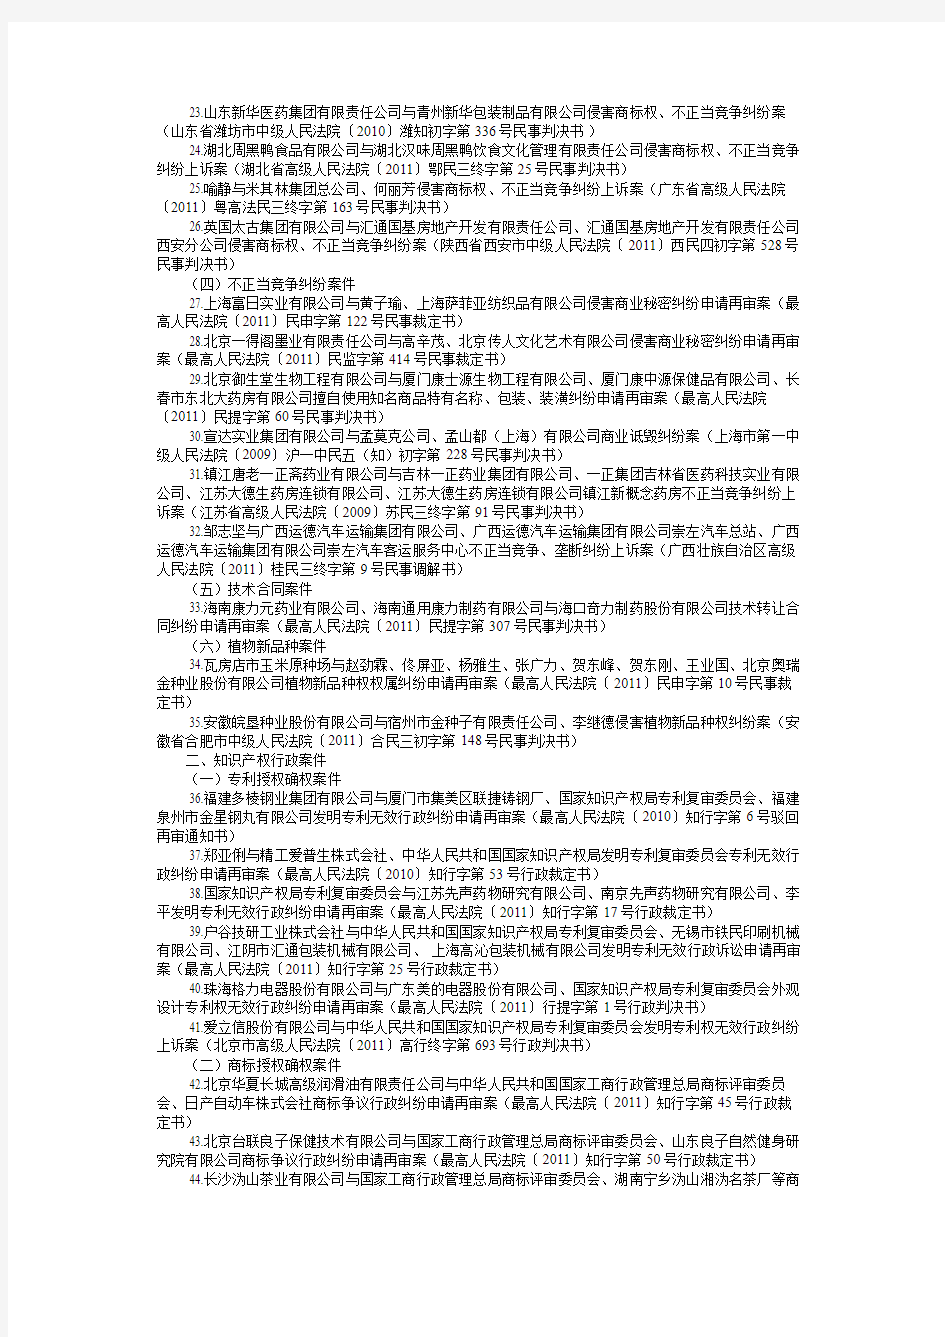 2011年中国法院知识产权司法保护50件典型案例名单